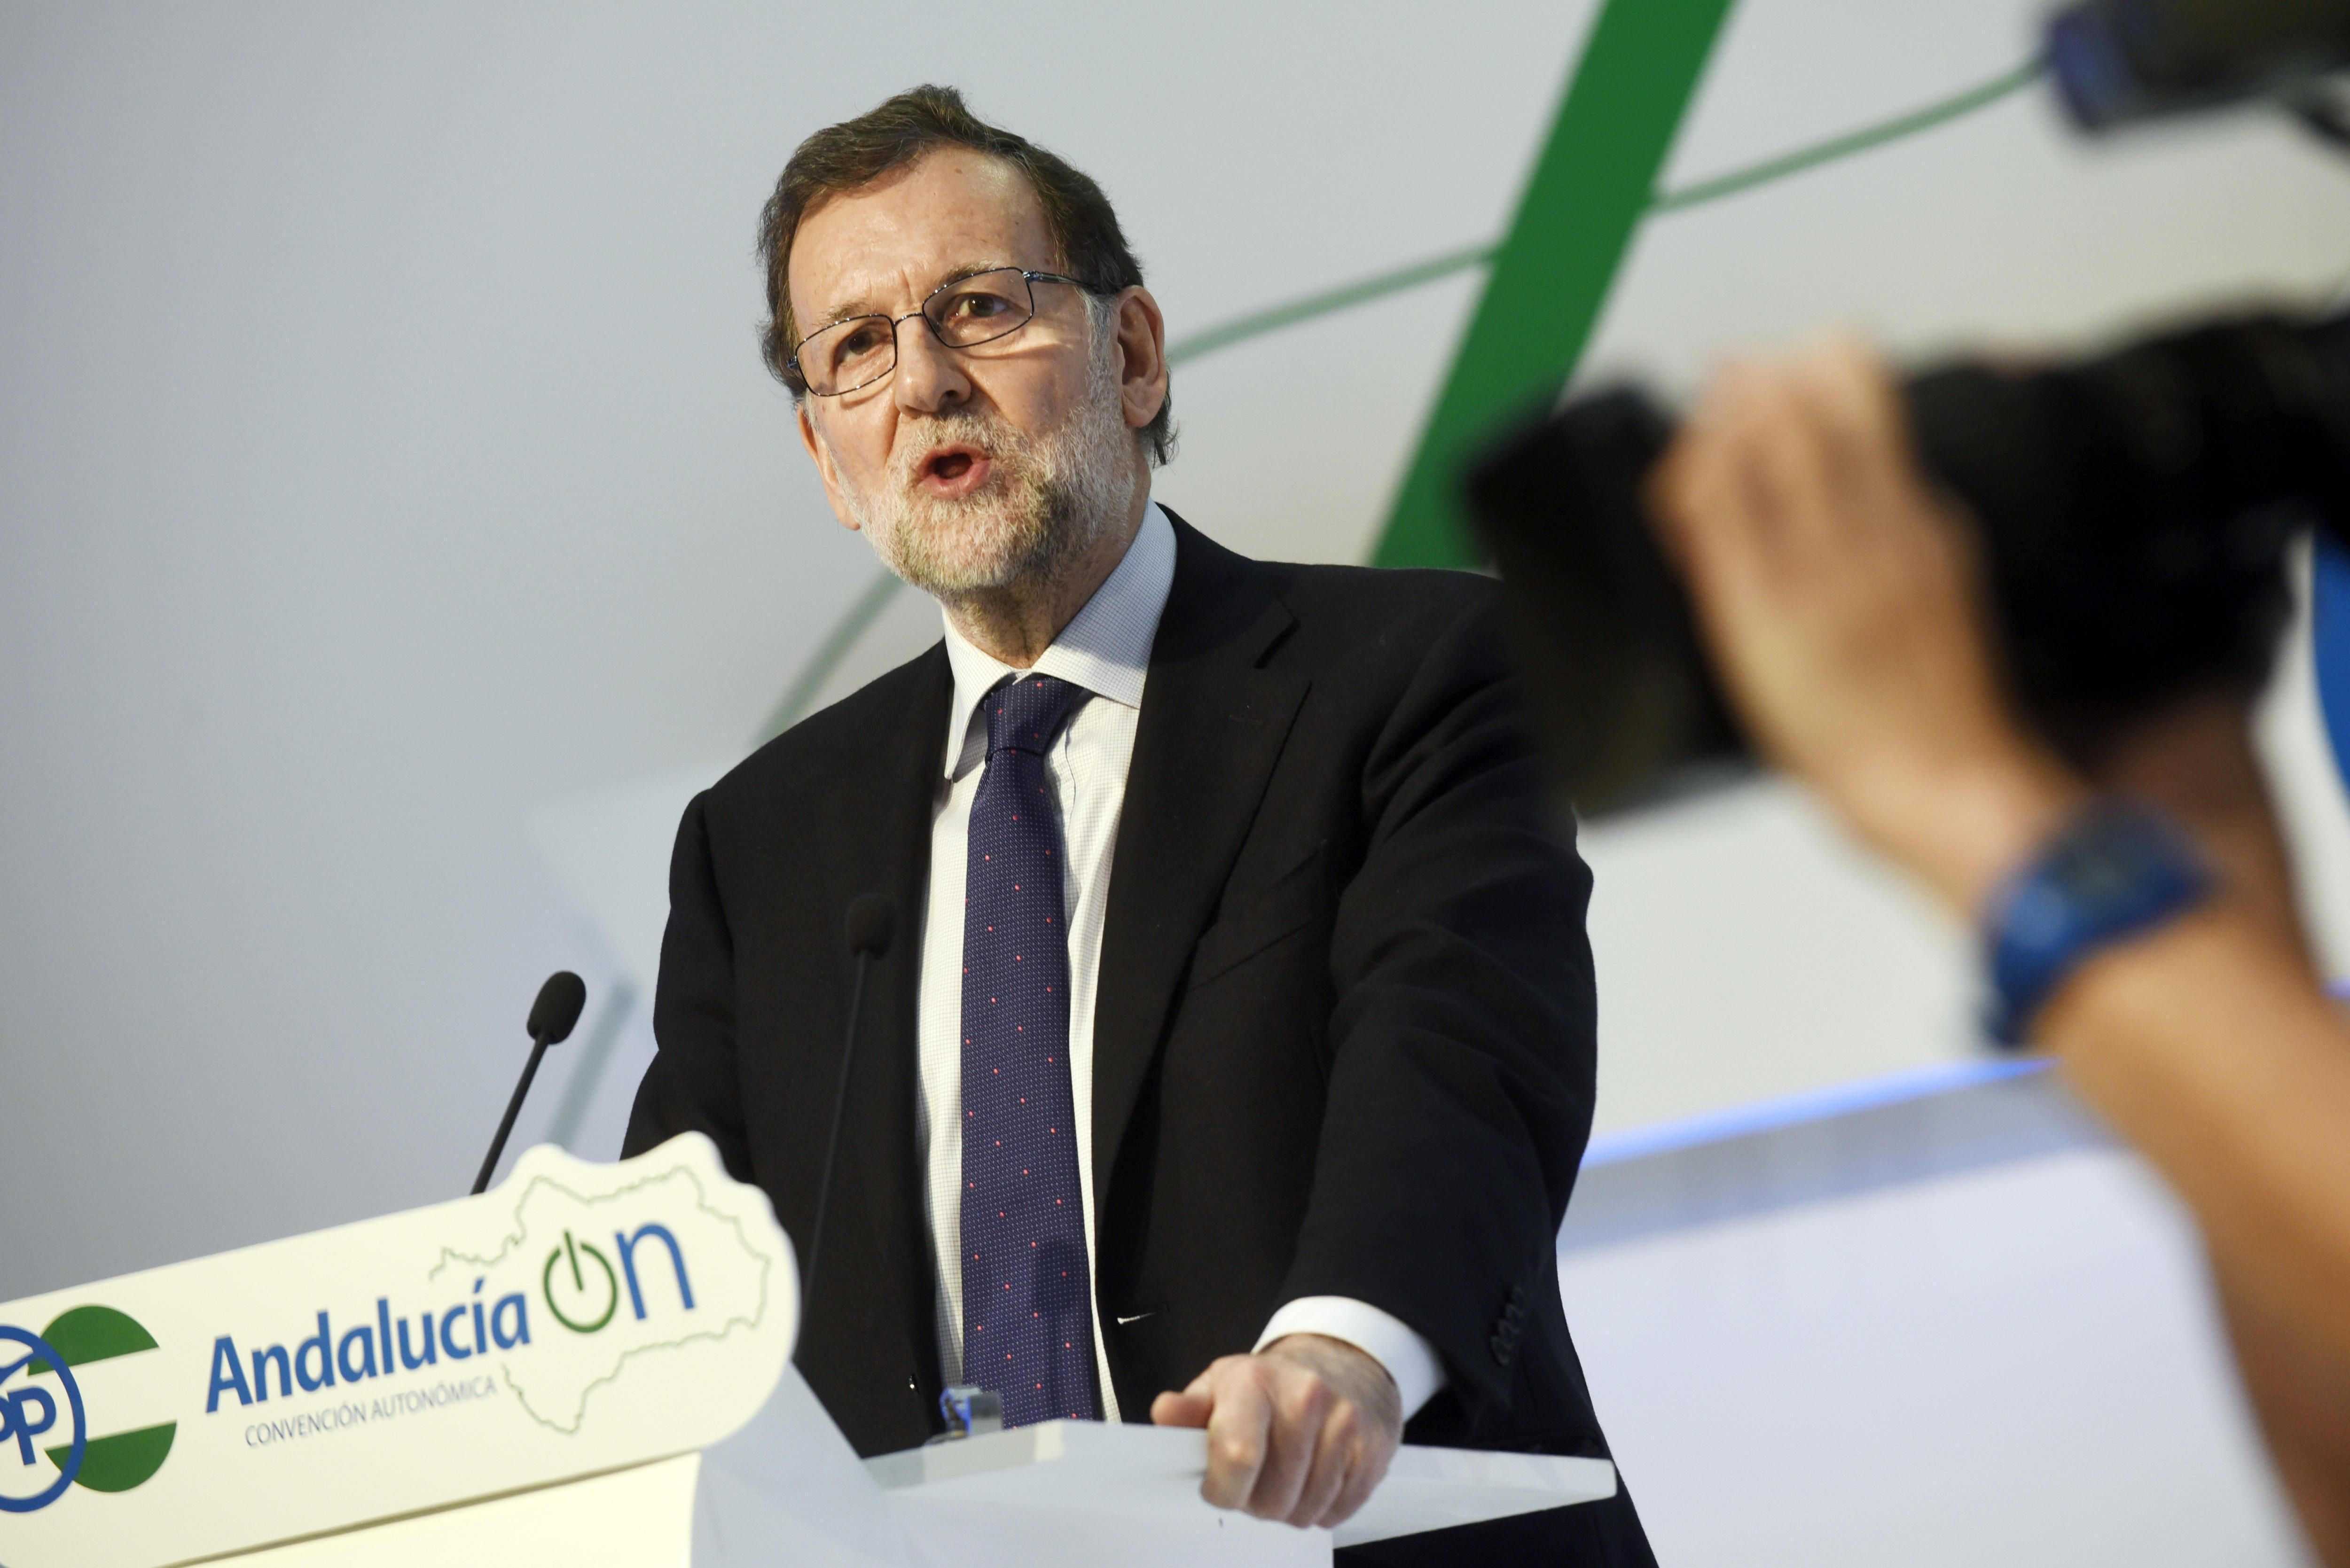 Rajoy advierte a Puigdemont sobre seguir "abrazado a la radicalidad"